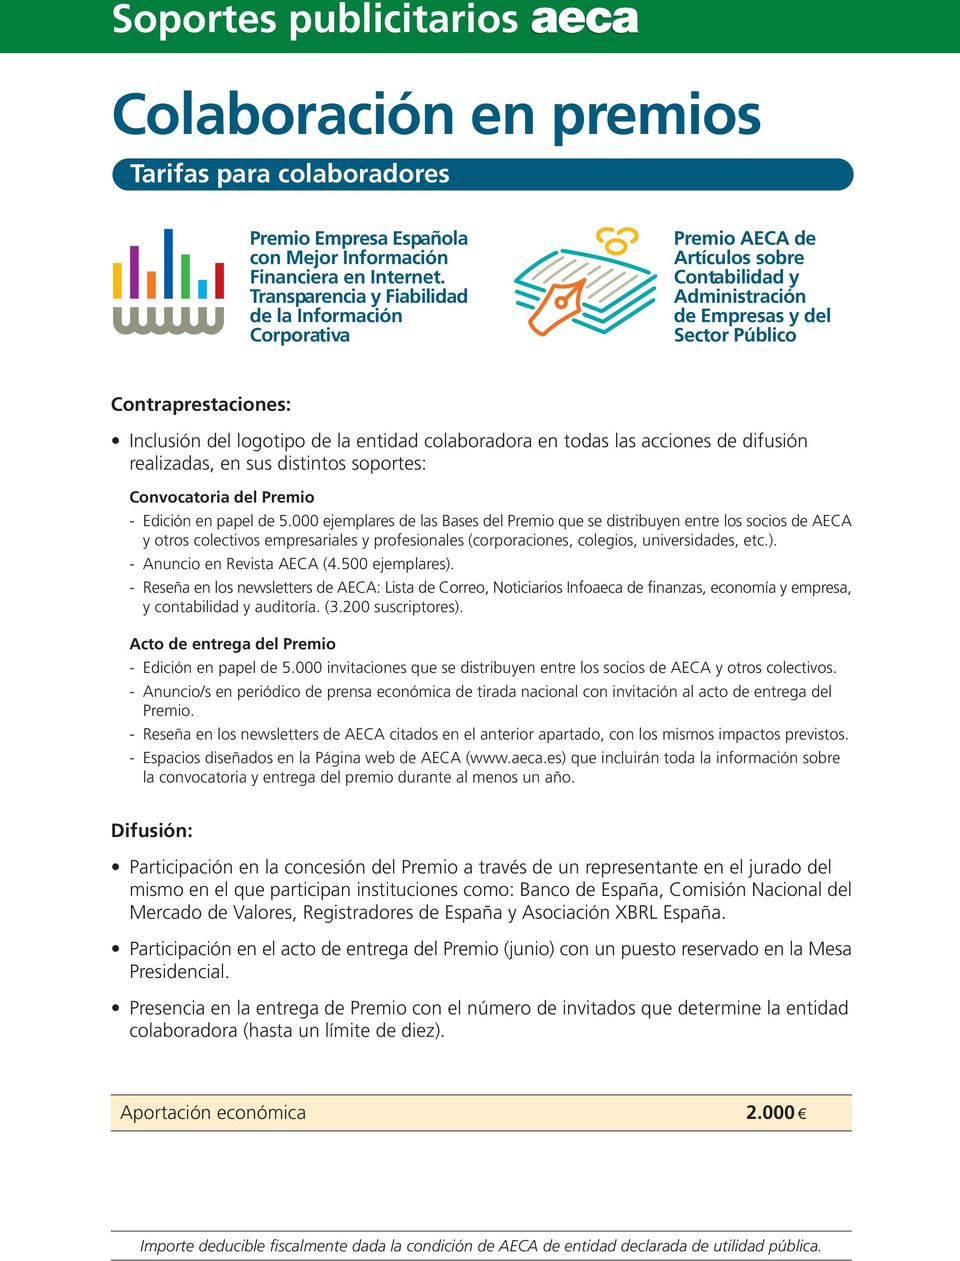 entidad colaboradora en todas las acciones de difusión realizadas, en sus distintos soportes: Convocatoria del Premio - Edición en papel de 5.